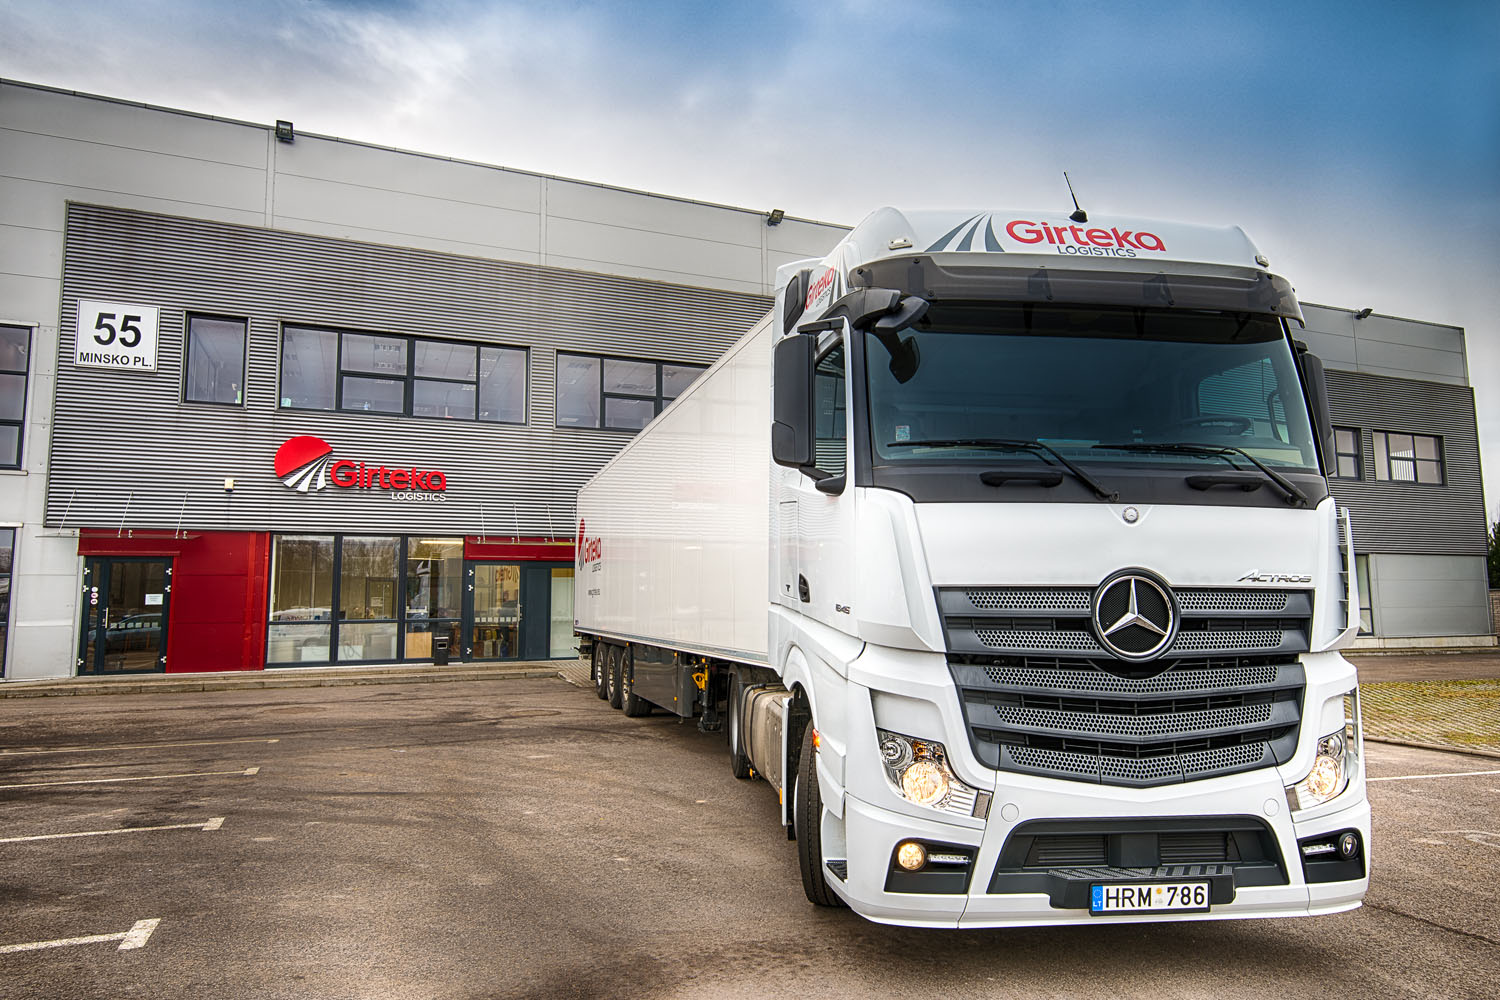 Mercedes-Benz registró el mayor pedido de flota en su historia en Europa del Este: 1000 Mercedes-Benz Actros para Girteka Logistics